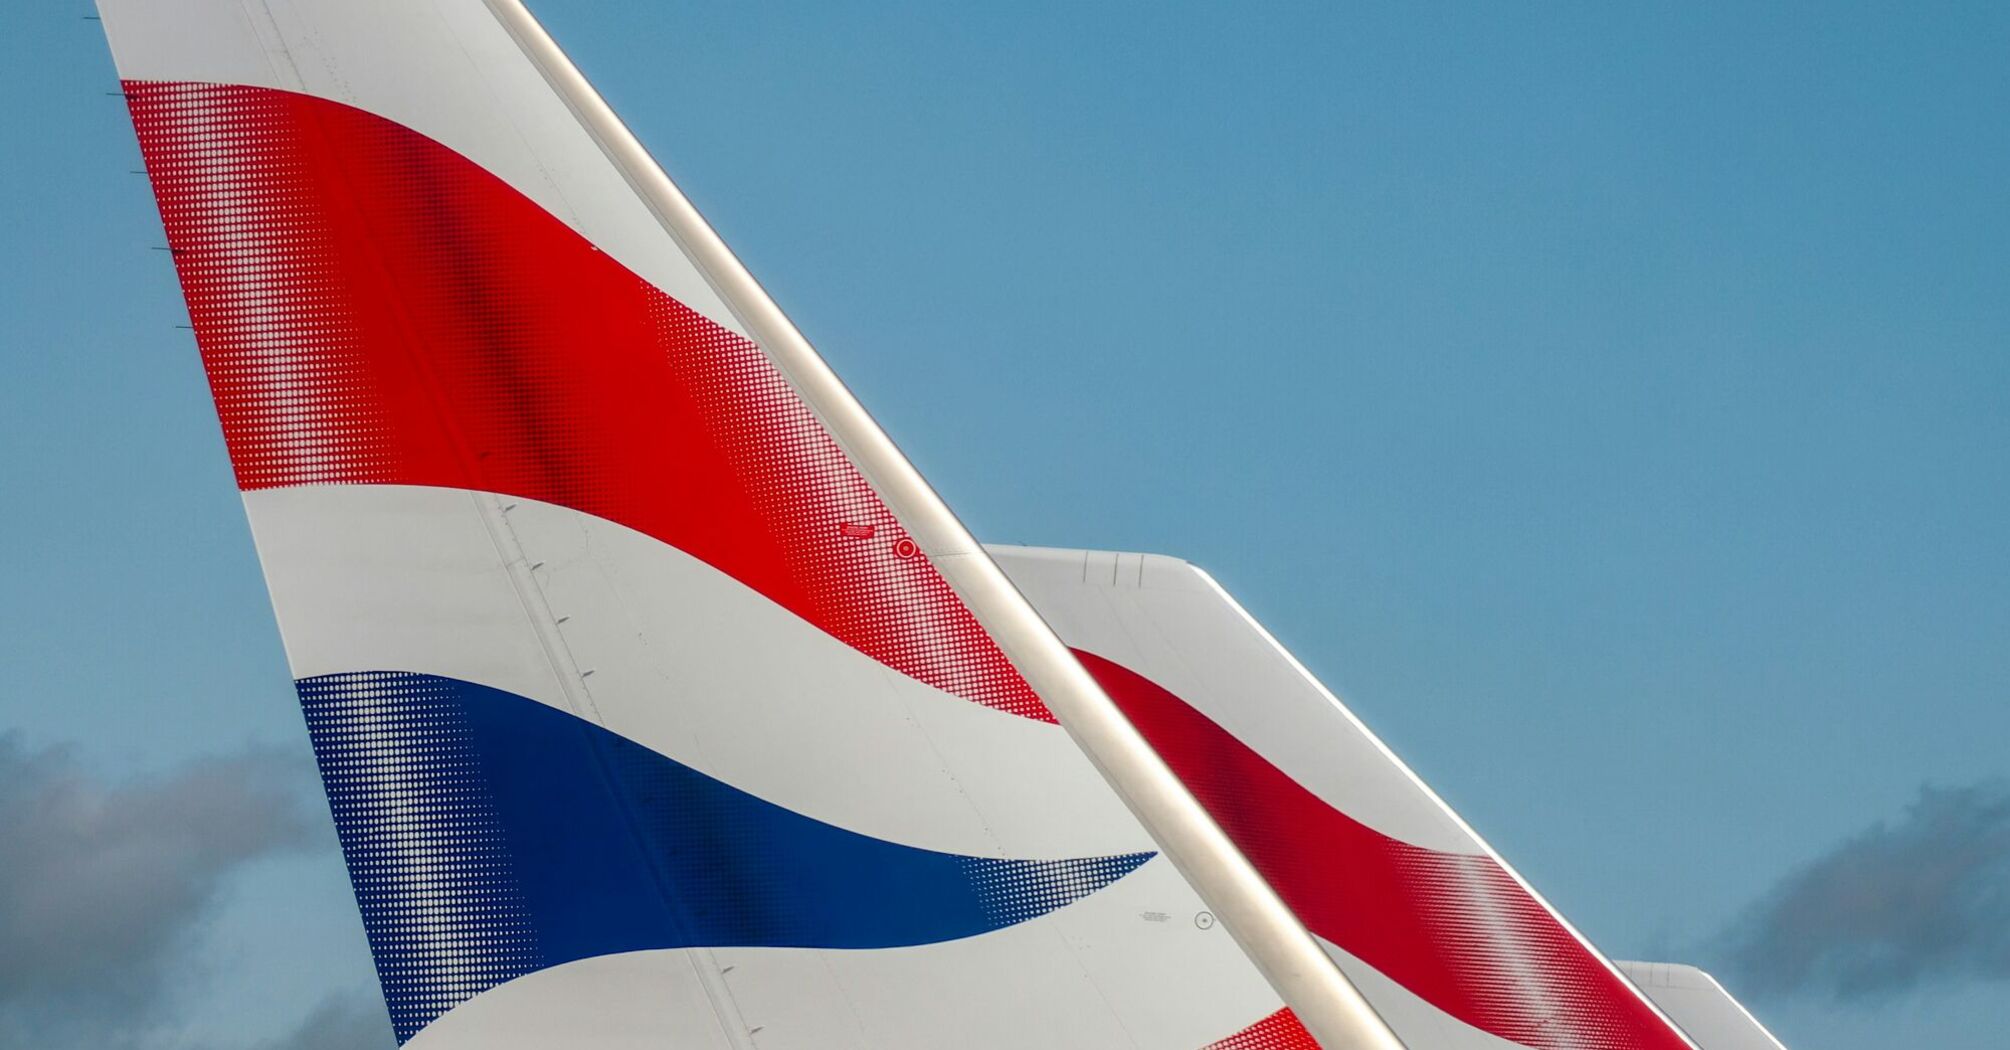 British Airways tails with Union Jack design